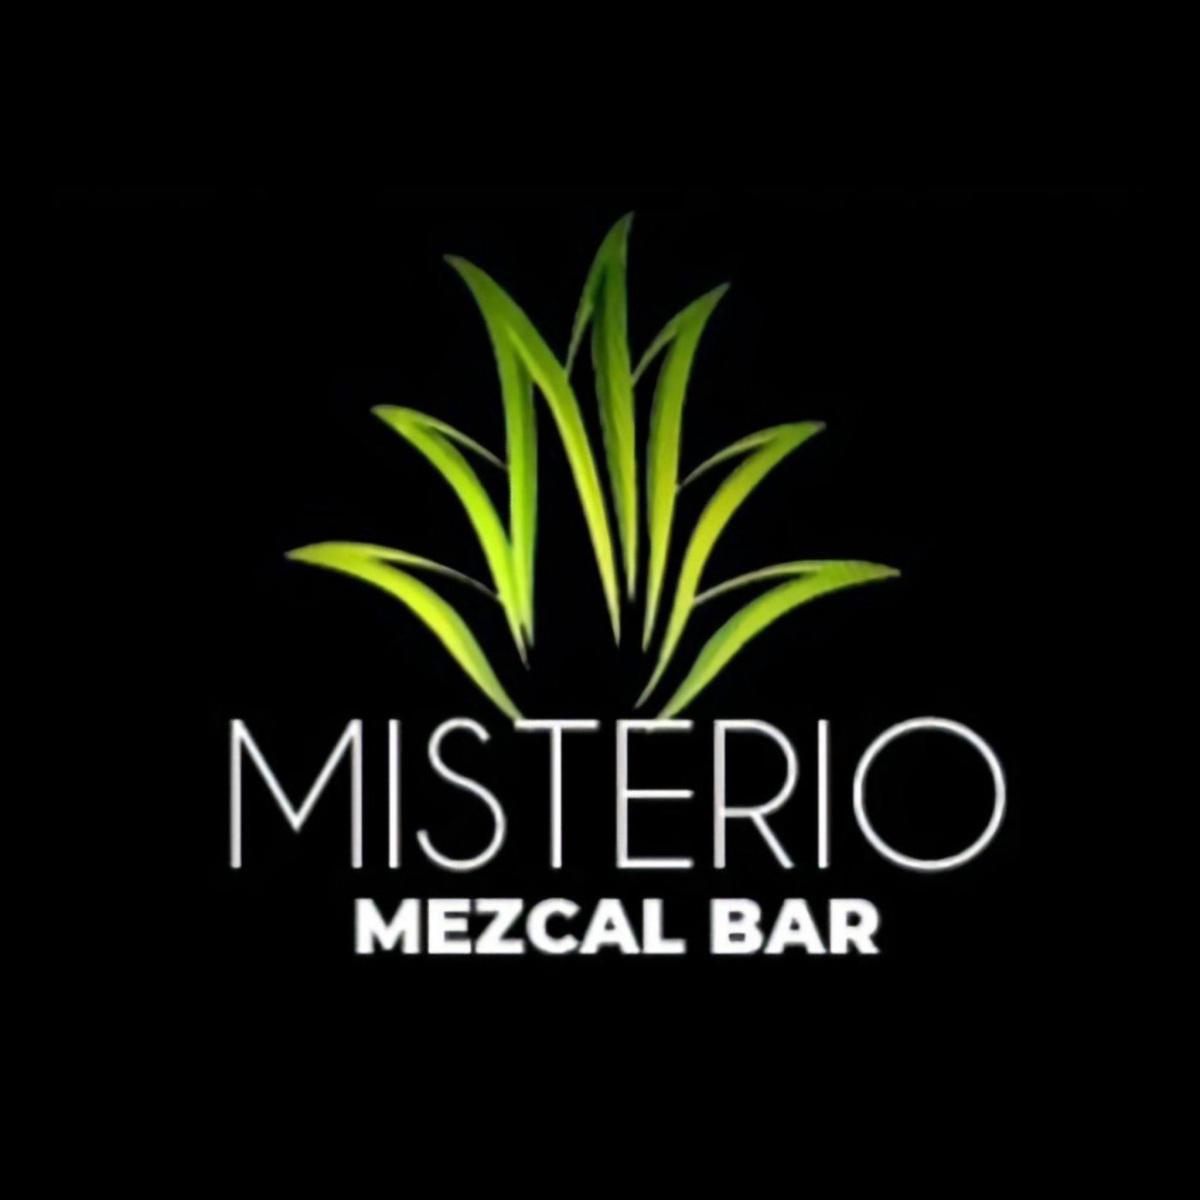 Misterio Mezcal Bar